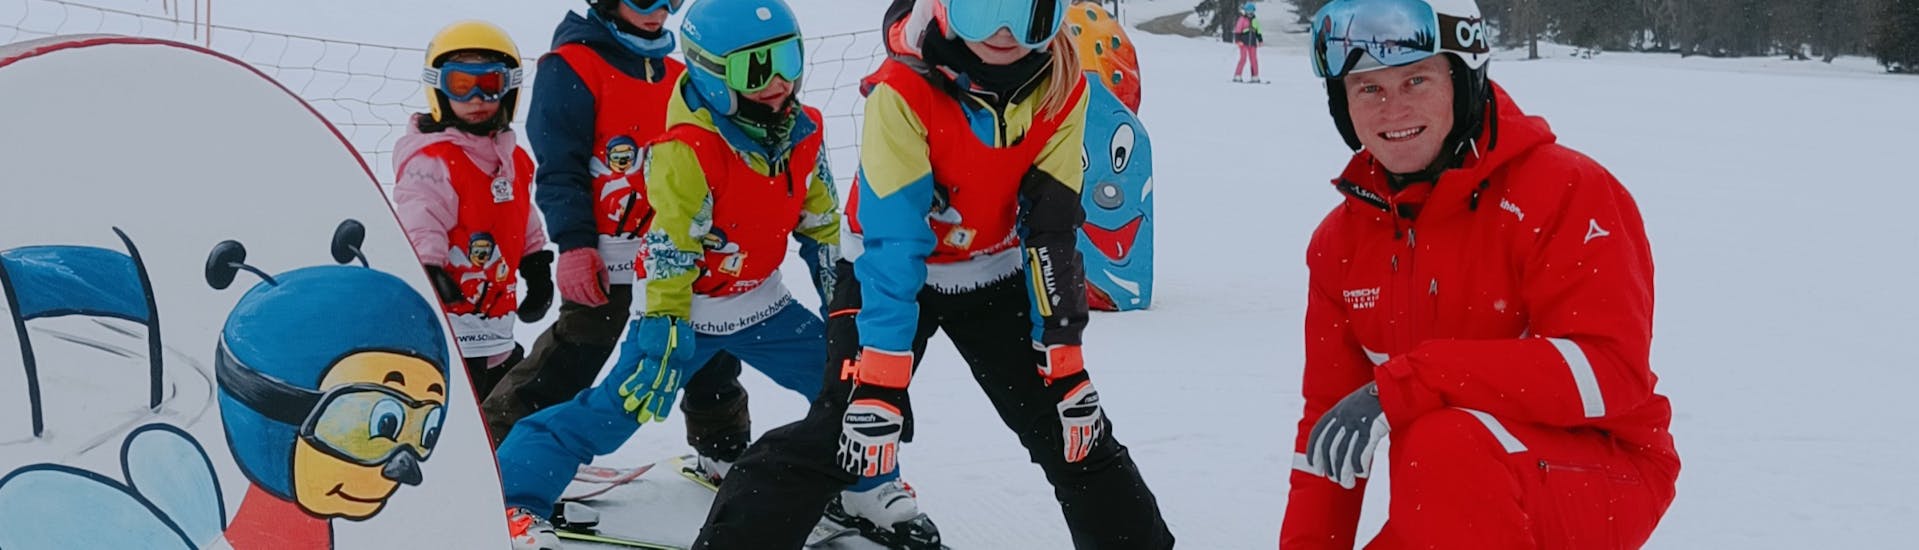 Cours de ski Enfants dès 4 ans - Avancé avec Skischule Kreischberg - Mayer.